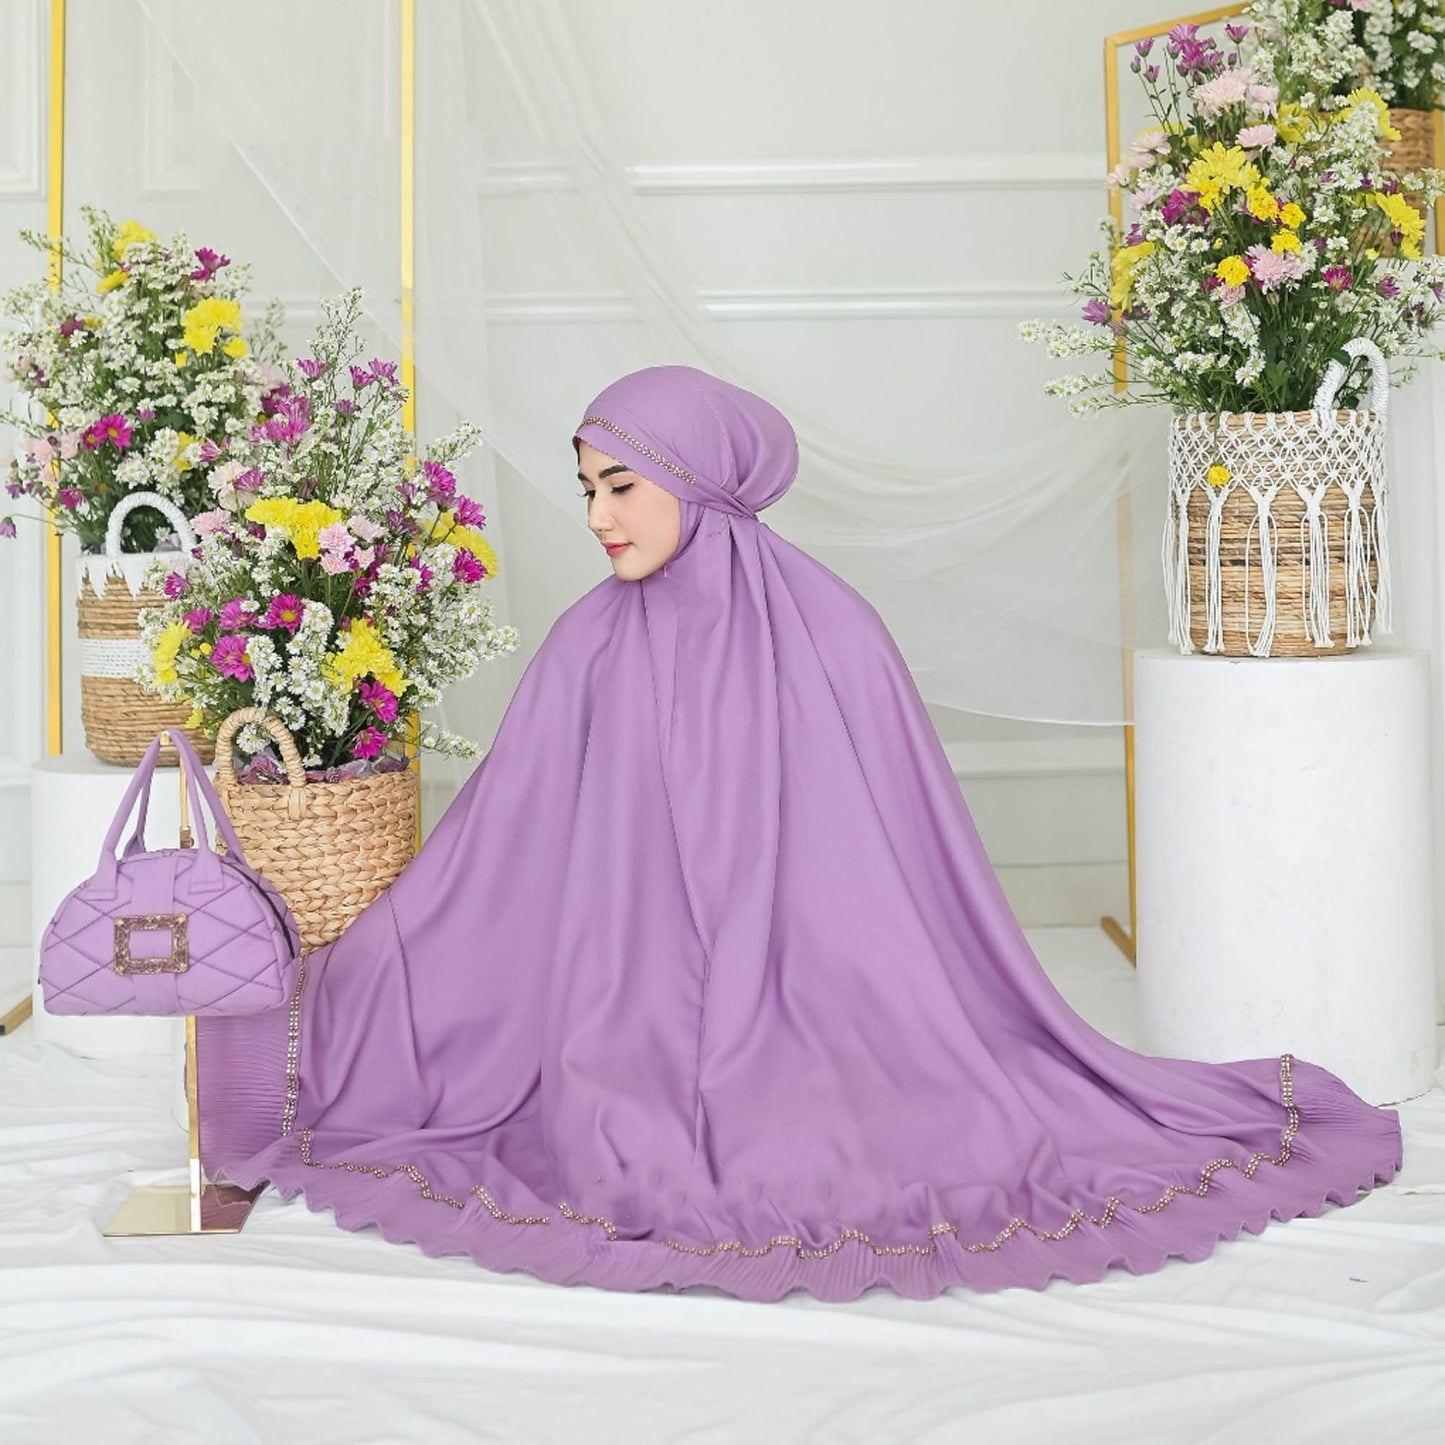 3in1 Mukena für Erwachsene: Eine einzigartige Note für hochwertige Anbetung, muslimisches Gebetsoutfit, Gamis-Kleid, Gebetskleid für Frauen, Jilbab-Kleid